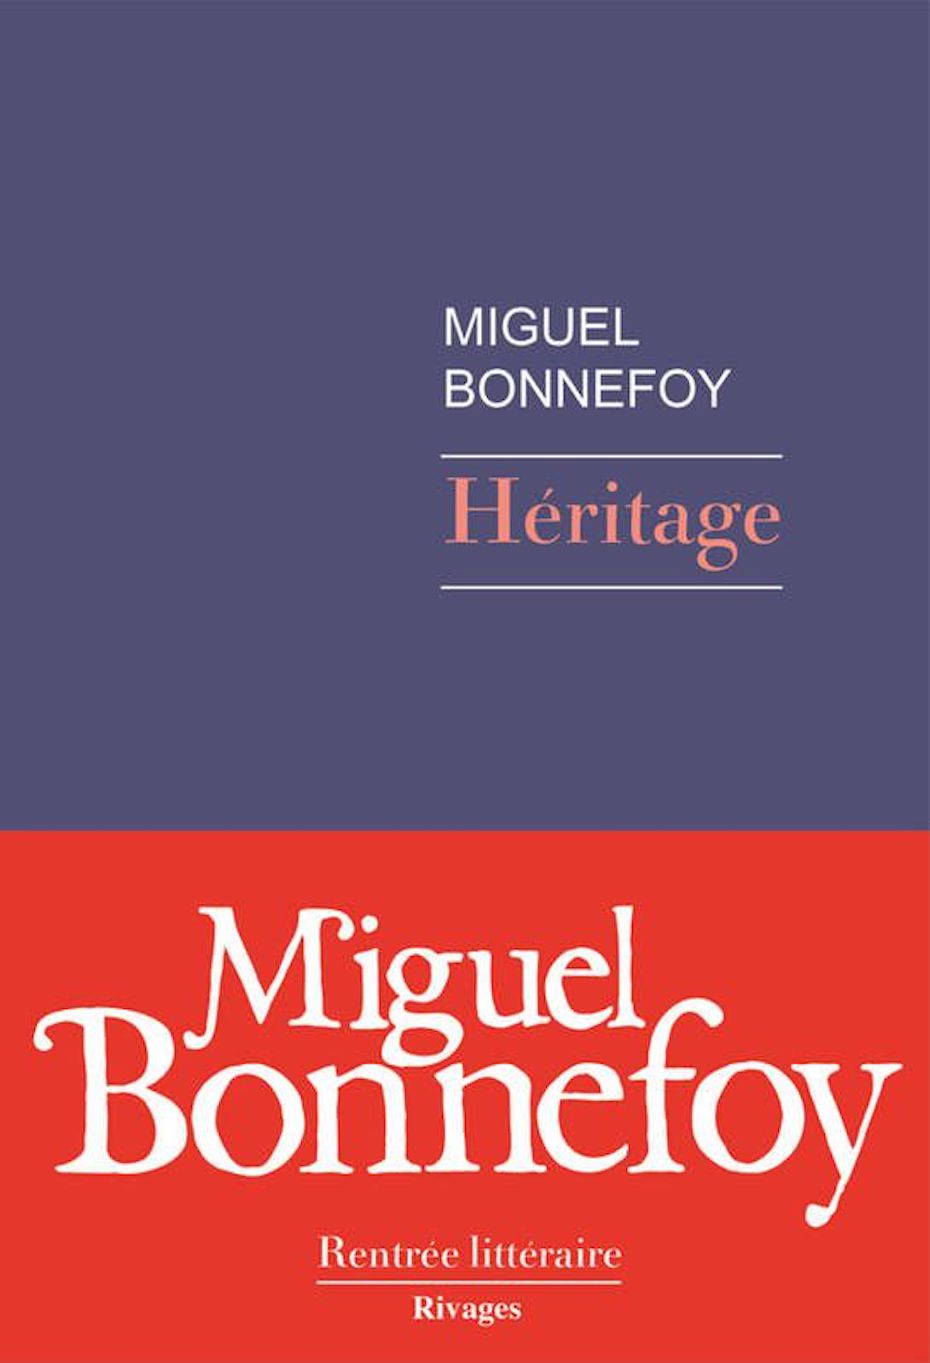 Miguel Bonnefoy, Héritage (Rivages)